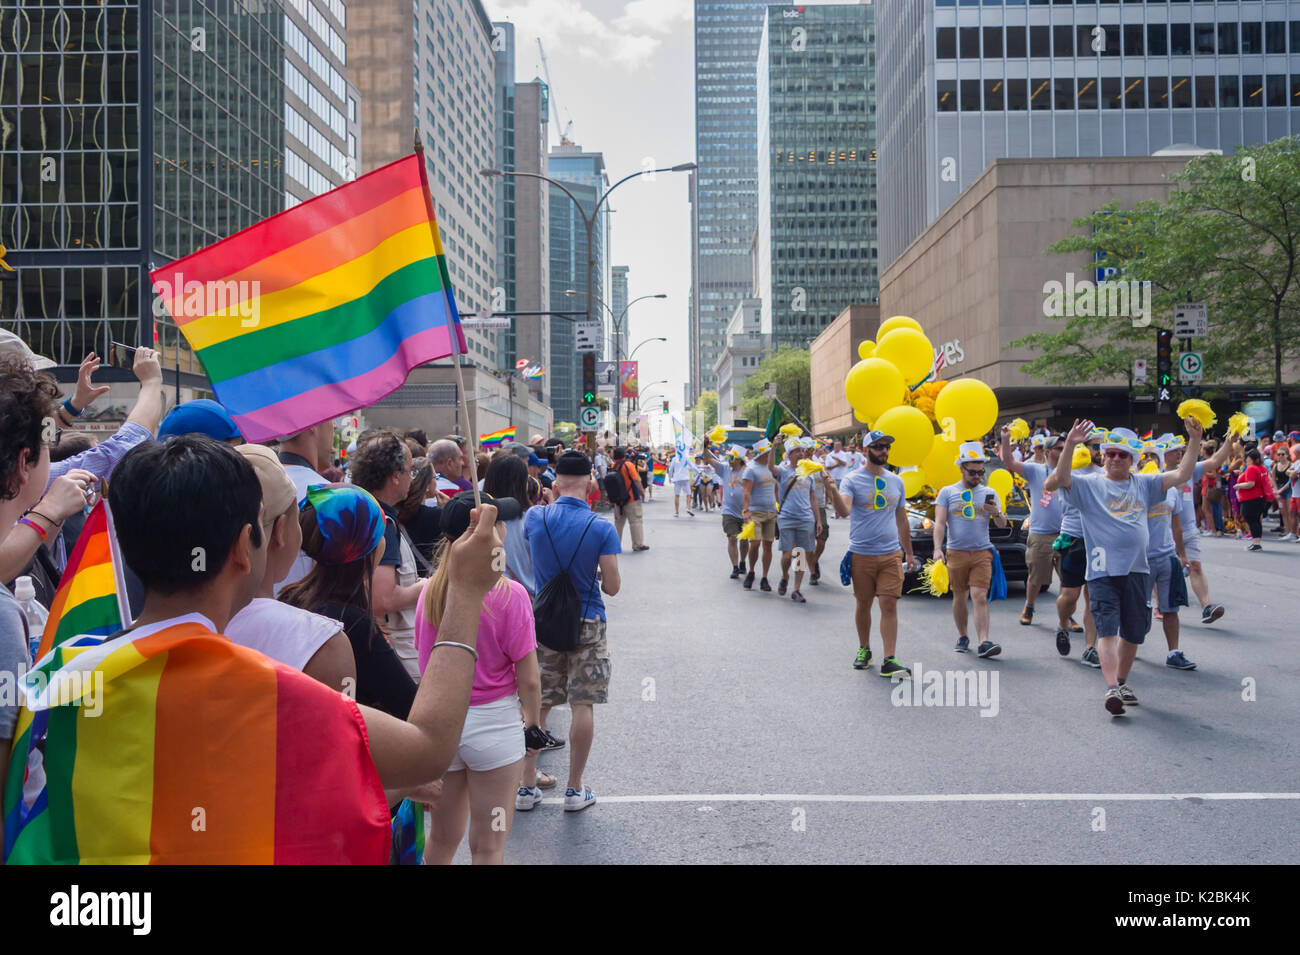 Montréal, le 20 août 2017 : Homme tenant un drapeau arc-en-ciel Gay gay pride parade à Montréal Banque D'Images